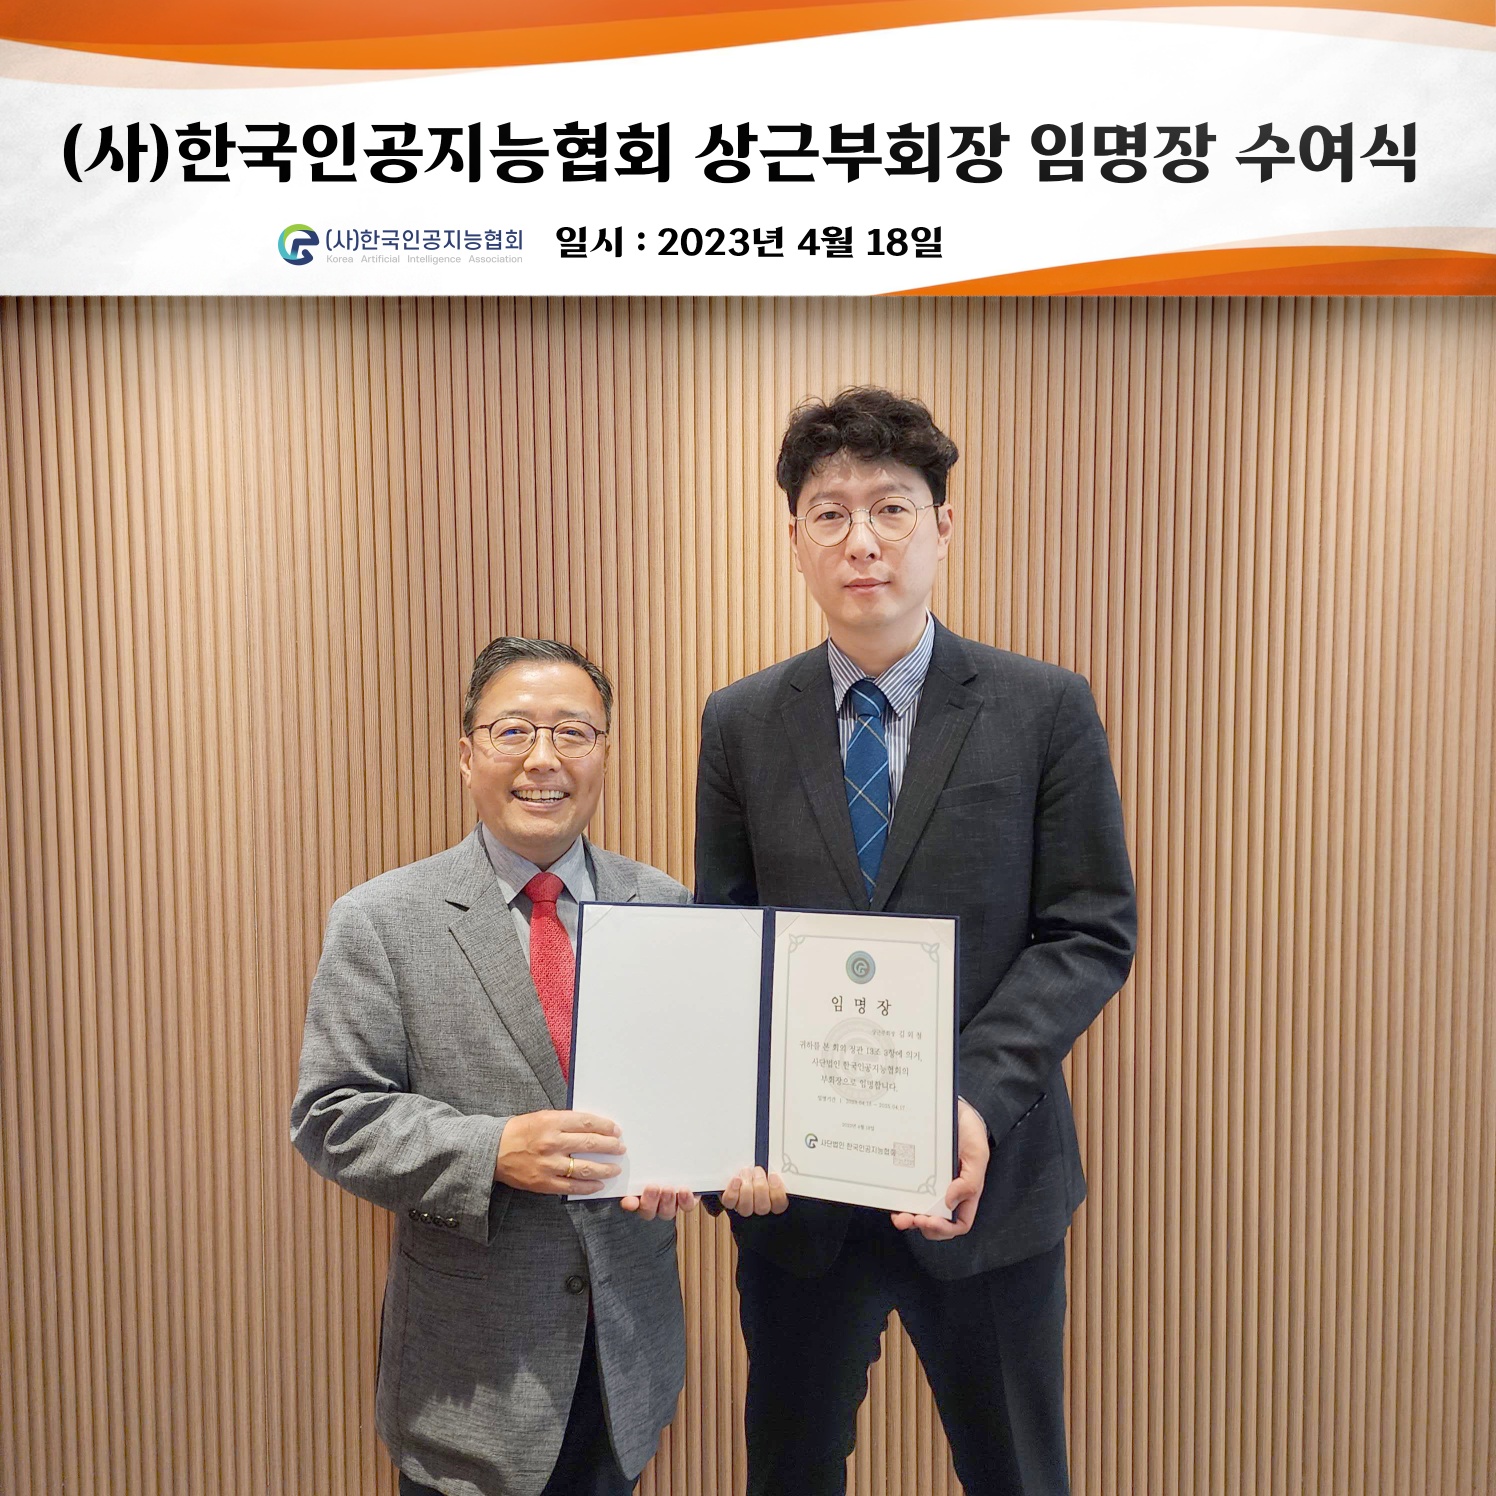 김외철(왼쪽) 한국인공지능협회 상근부회장이 지난 18일 임명장 수여식에서 기념 촬영을 하고 있다. 한국인공지능협회 제공